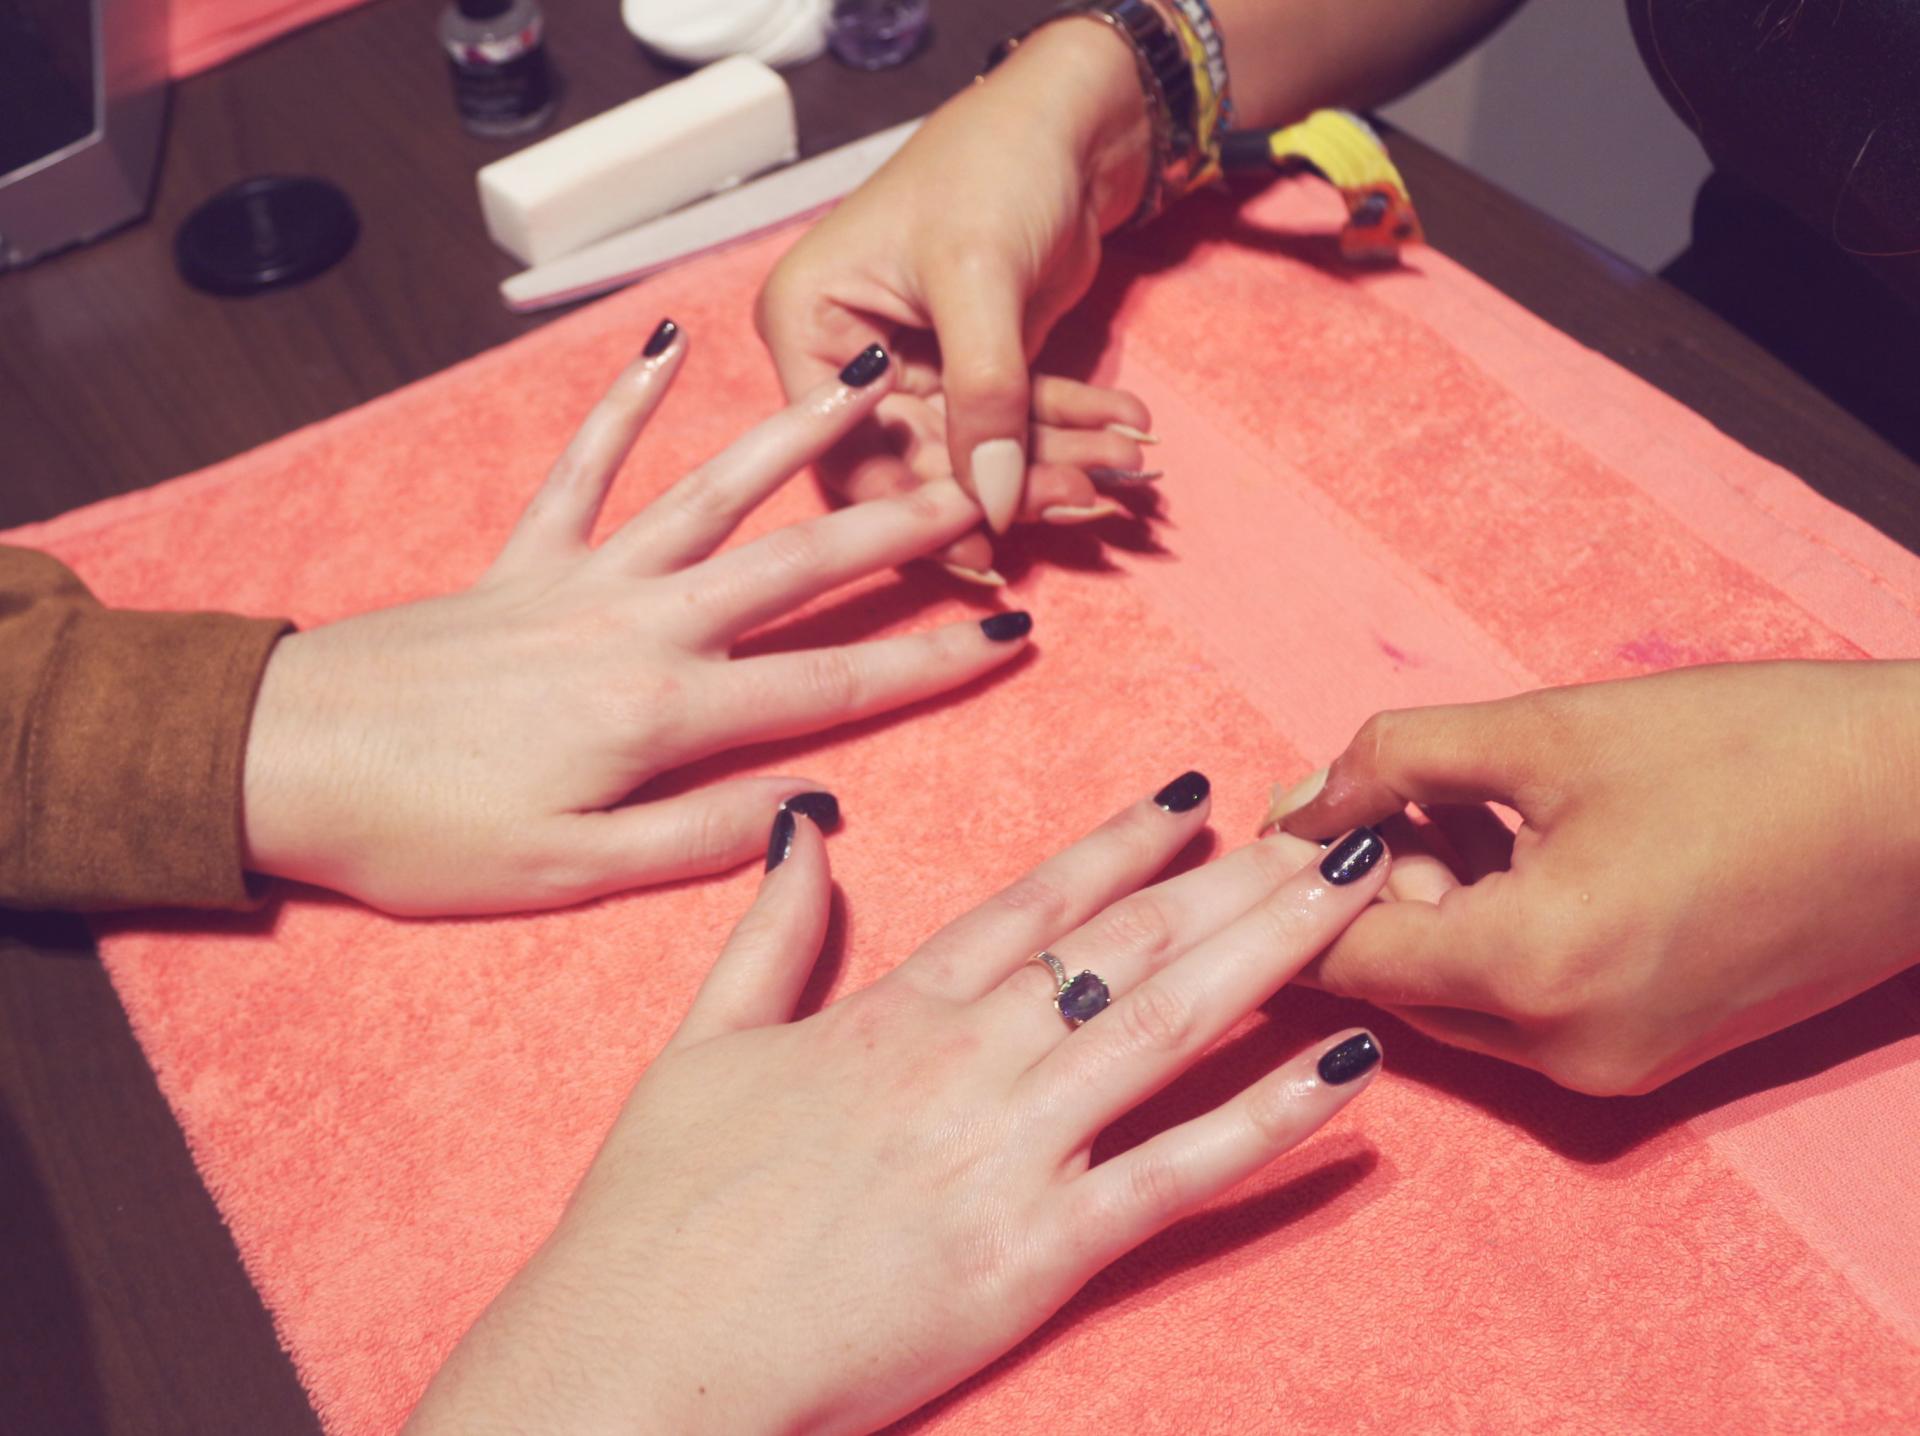 La Belle Beauty Salon Cheadle gel nails manicure